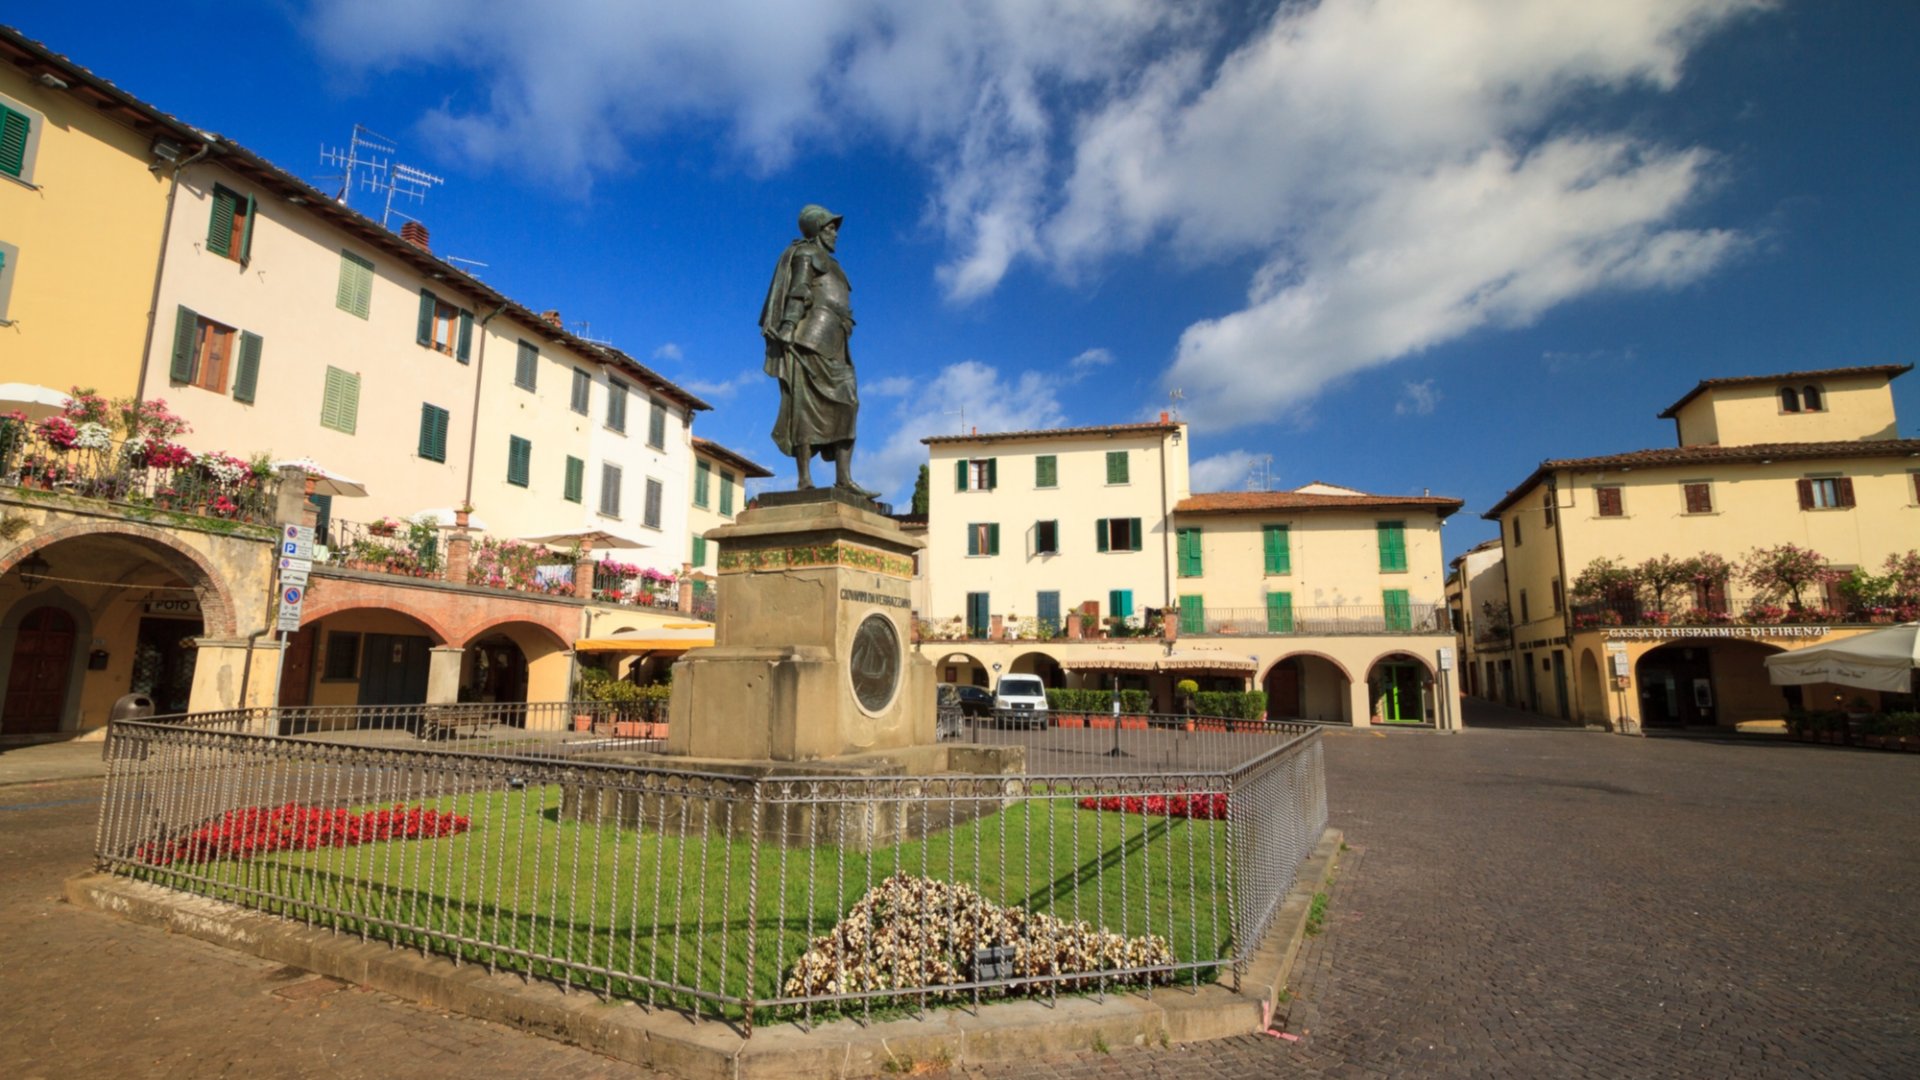 Die Piazza von Greve, umgeben von Bogengängen und der Giovanni da Verrazzano gewidmeten Statue im Zentrum